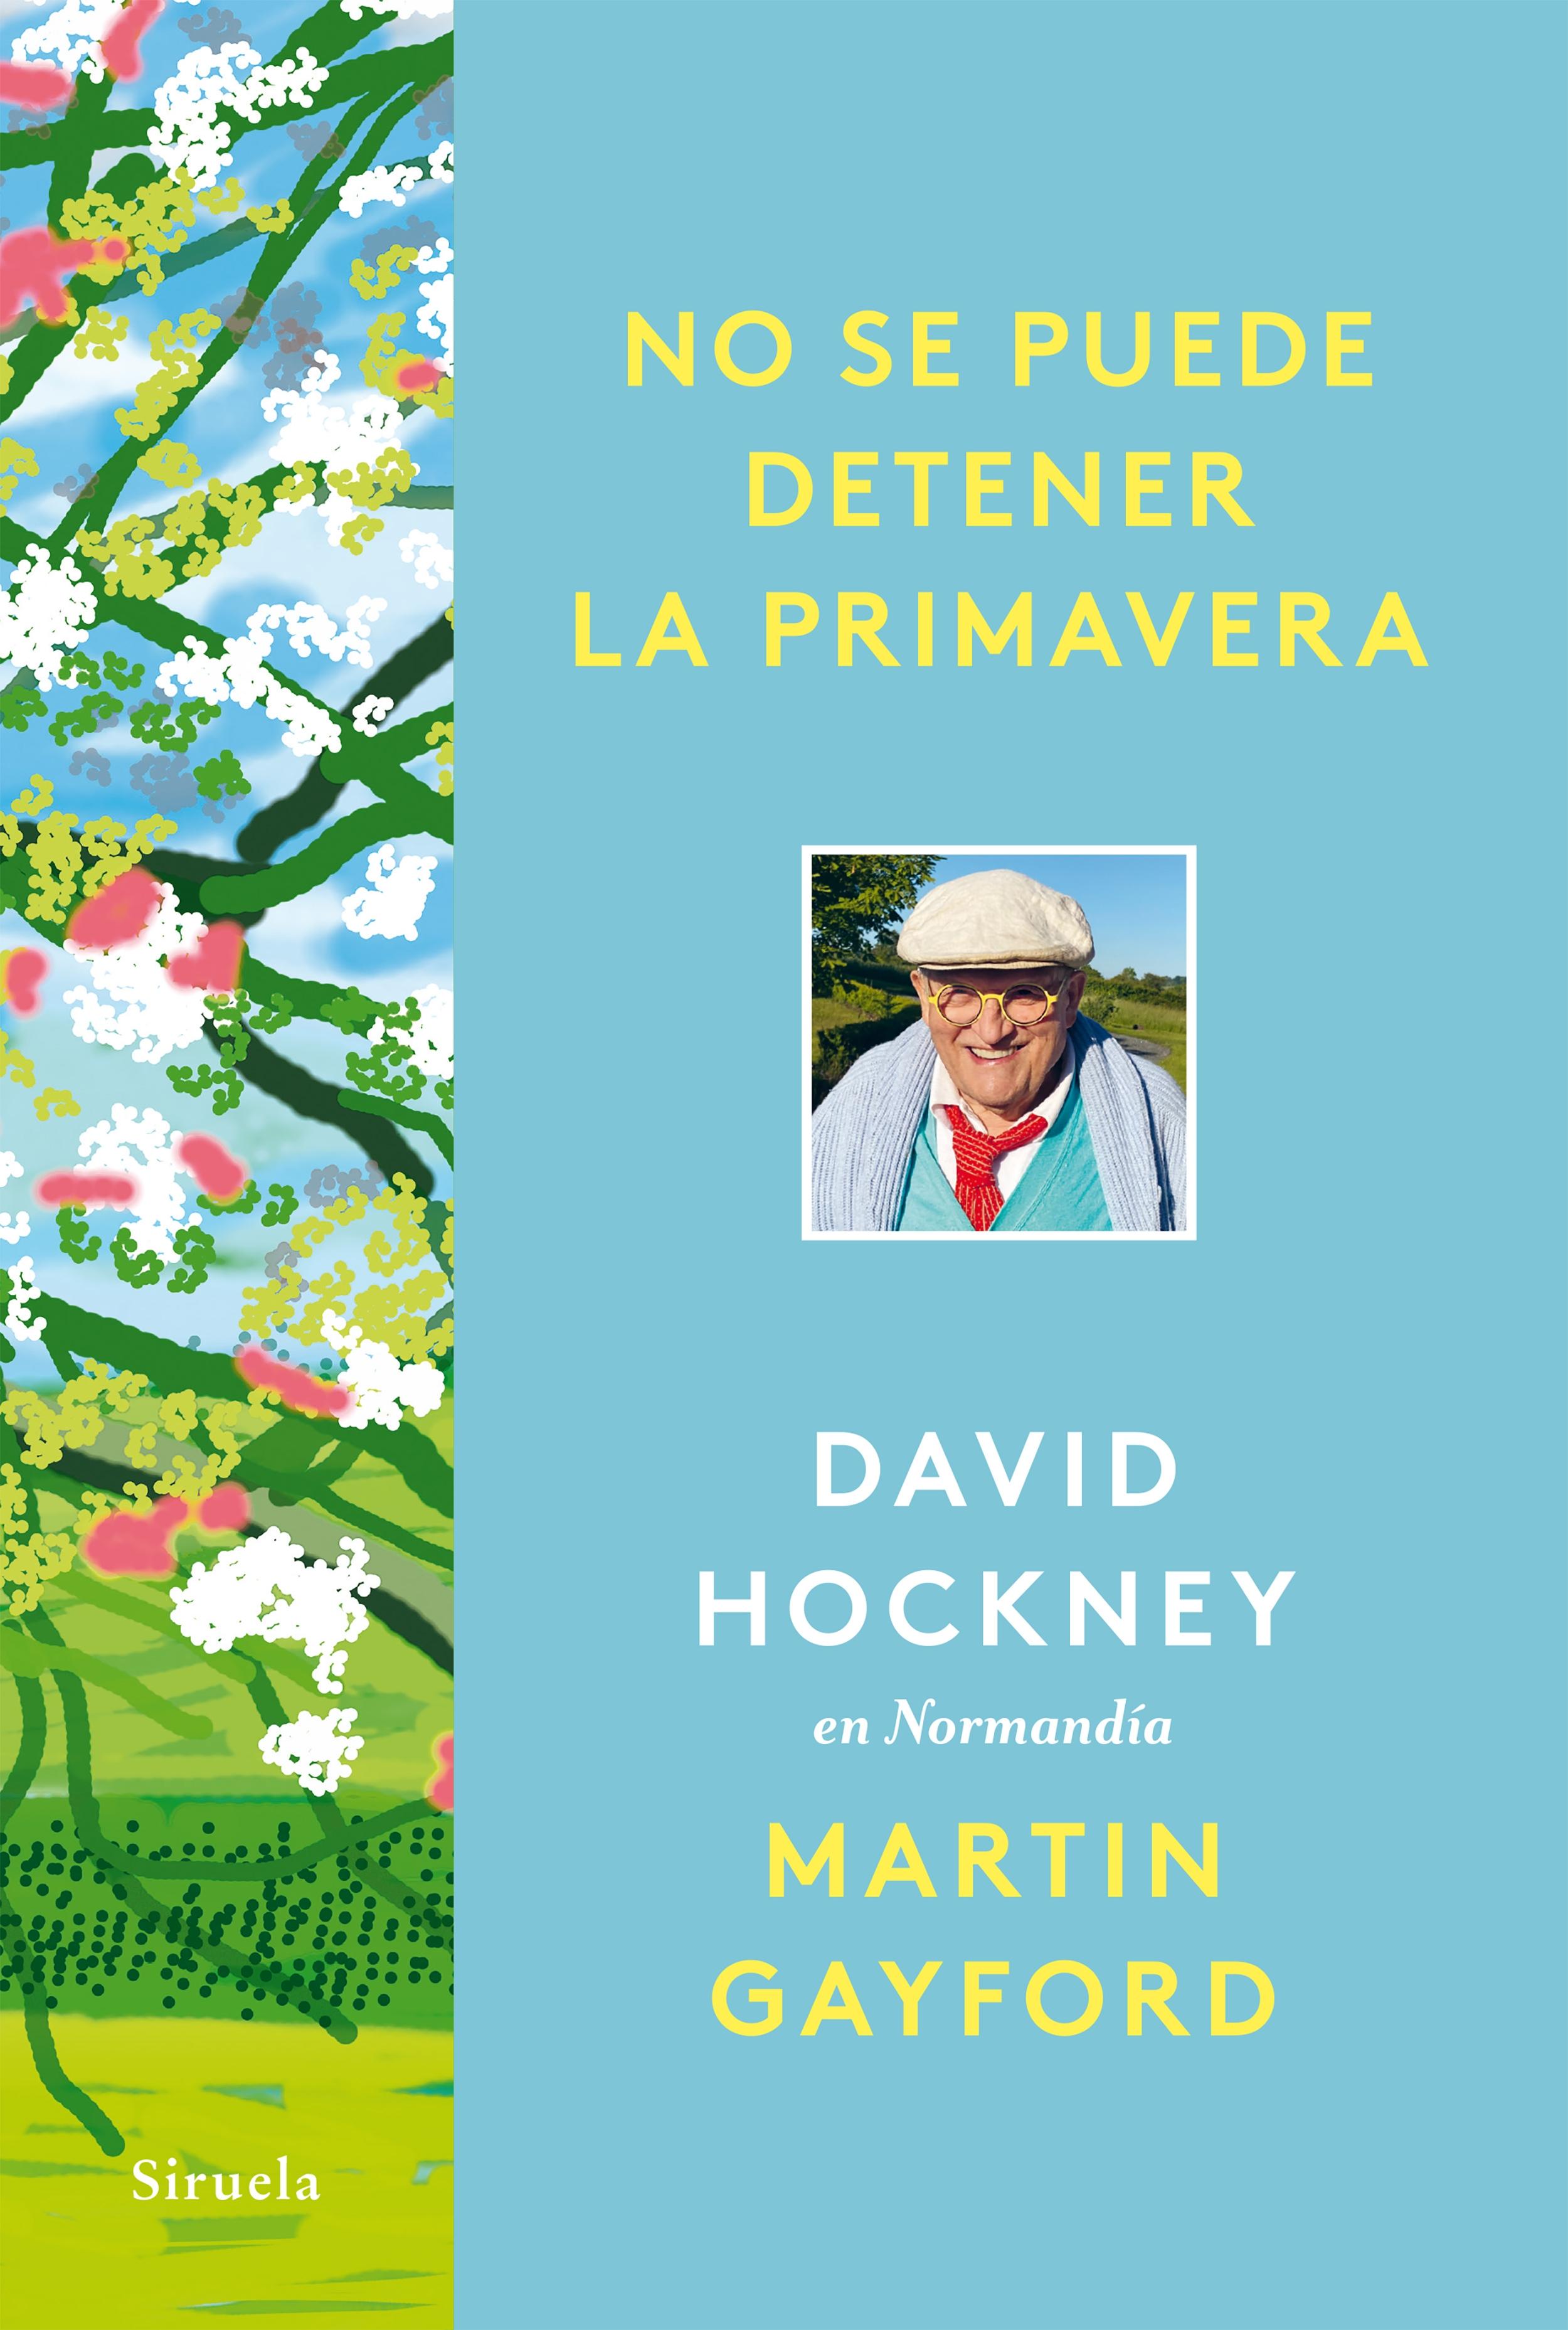 No se puede detener la primavera "David Hockney en Normandía"